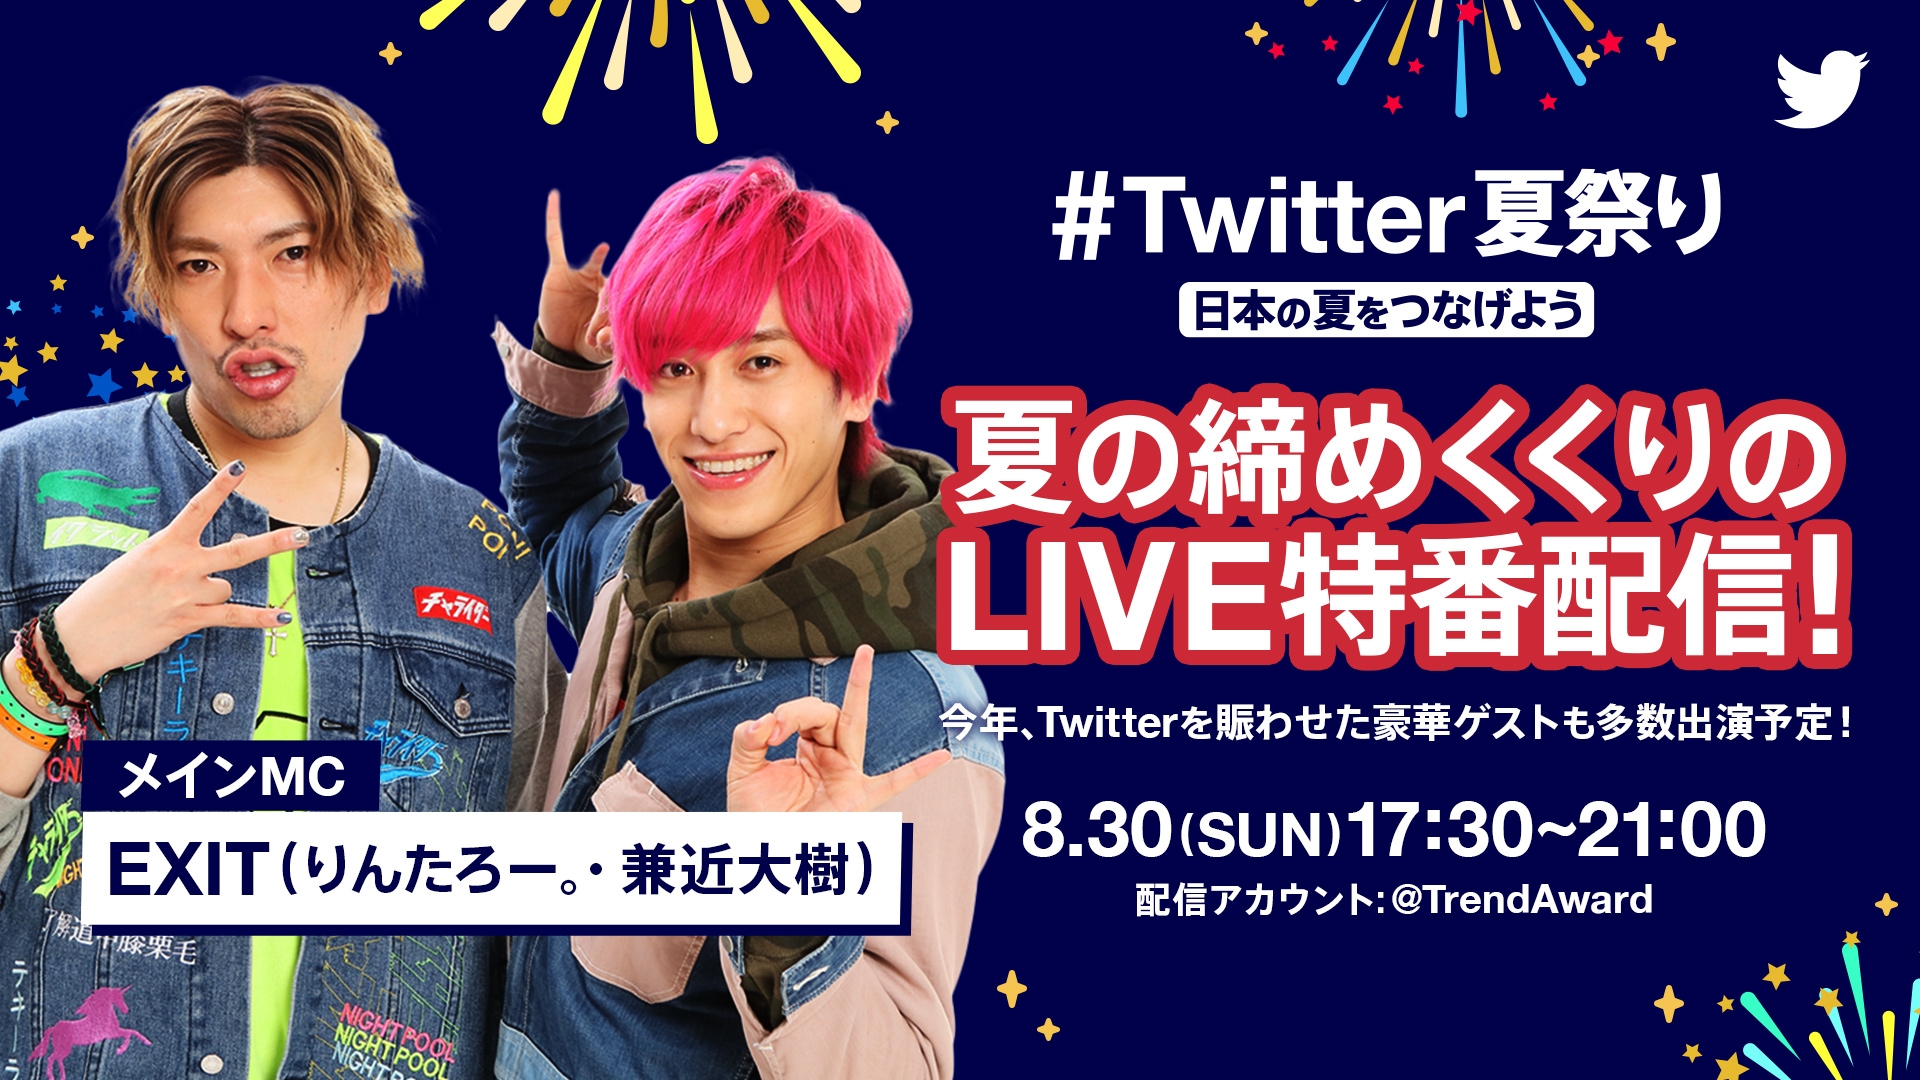 ライブ配信で日本中の夏をつなげる特別番組 Twitter夏祭り